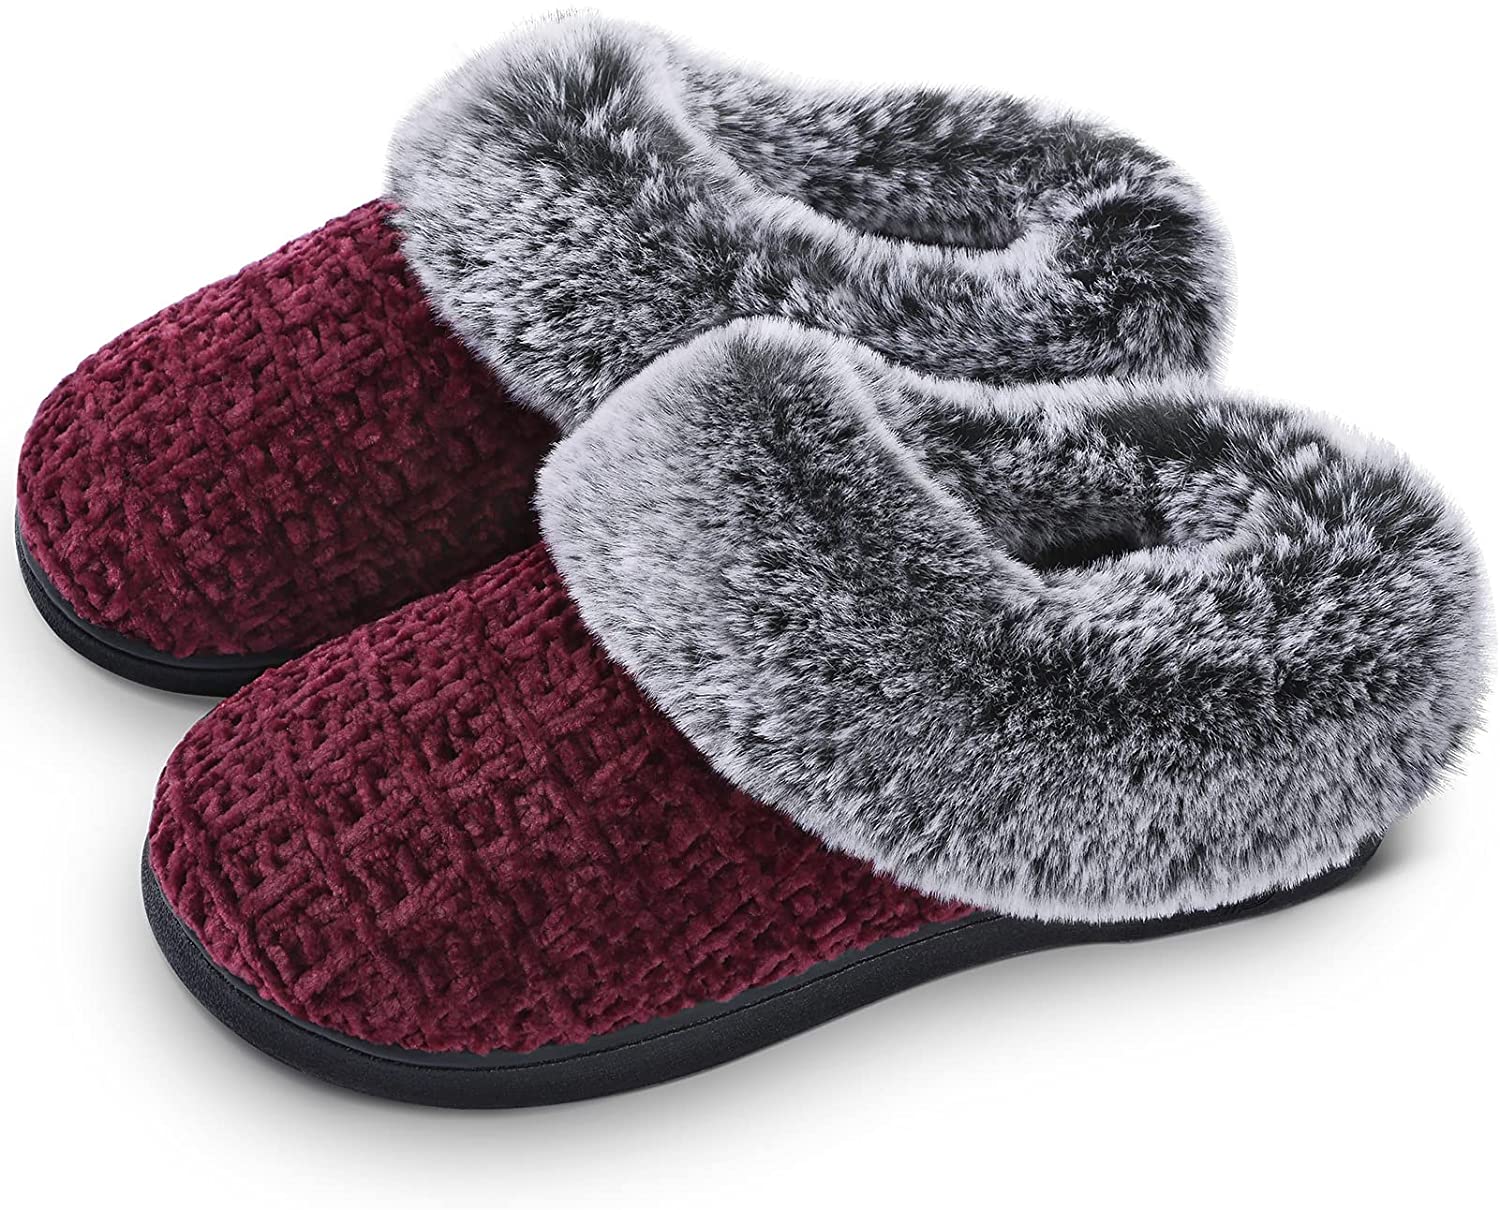 Buy Fluffy Slippers For Kids Girl For Home online | Lazada.com.ph